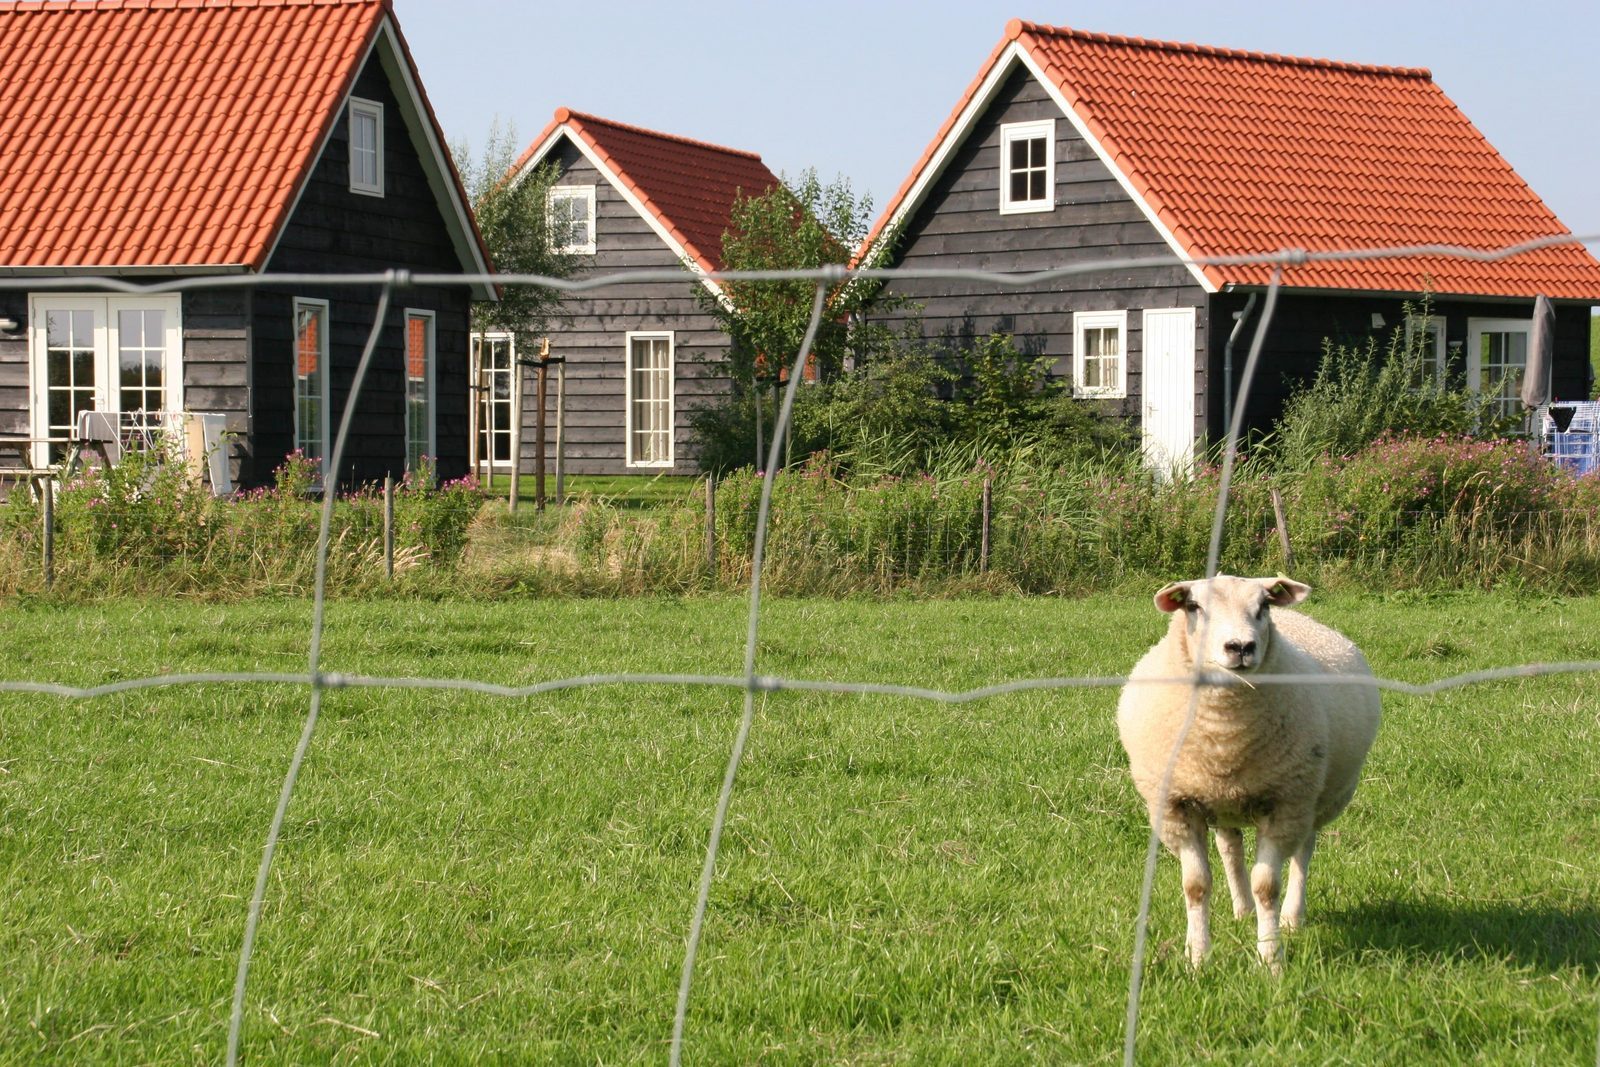 Homes in Zeeland